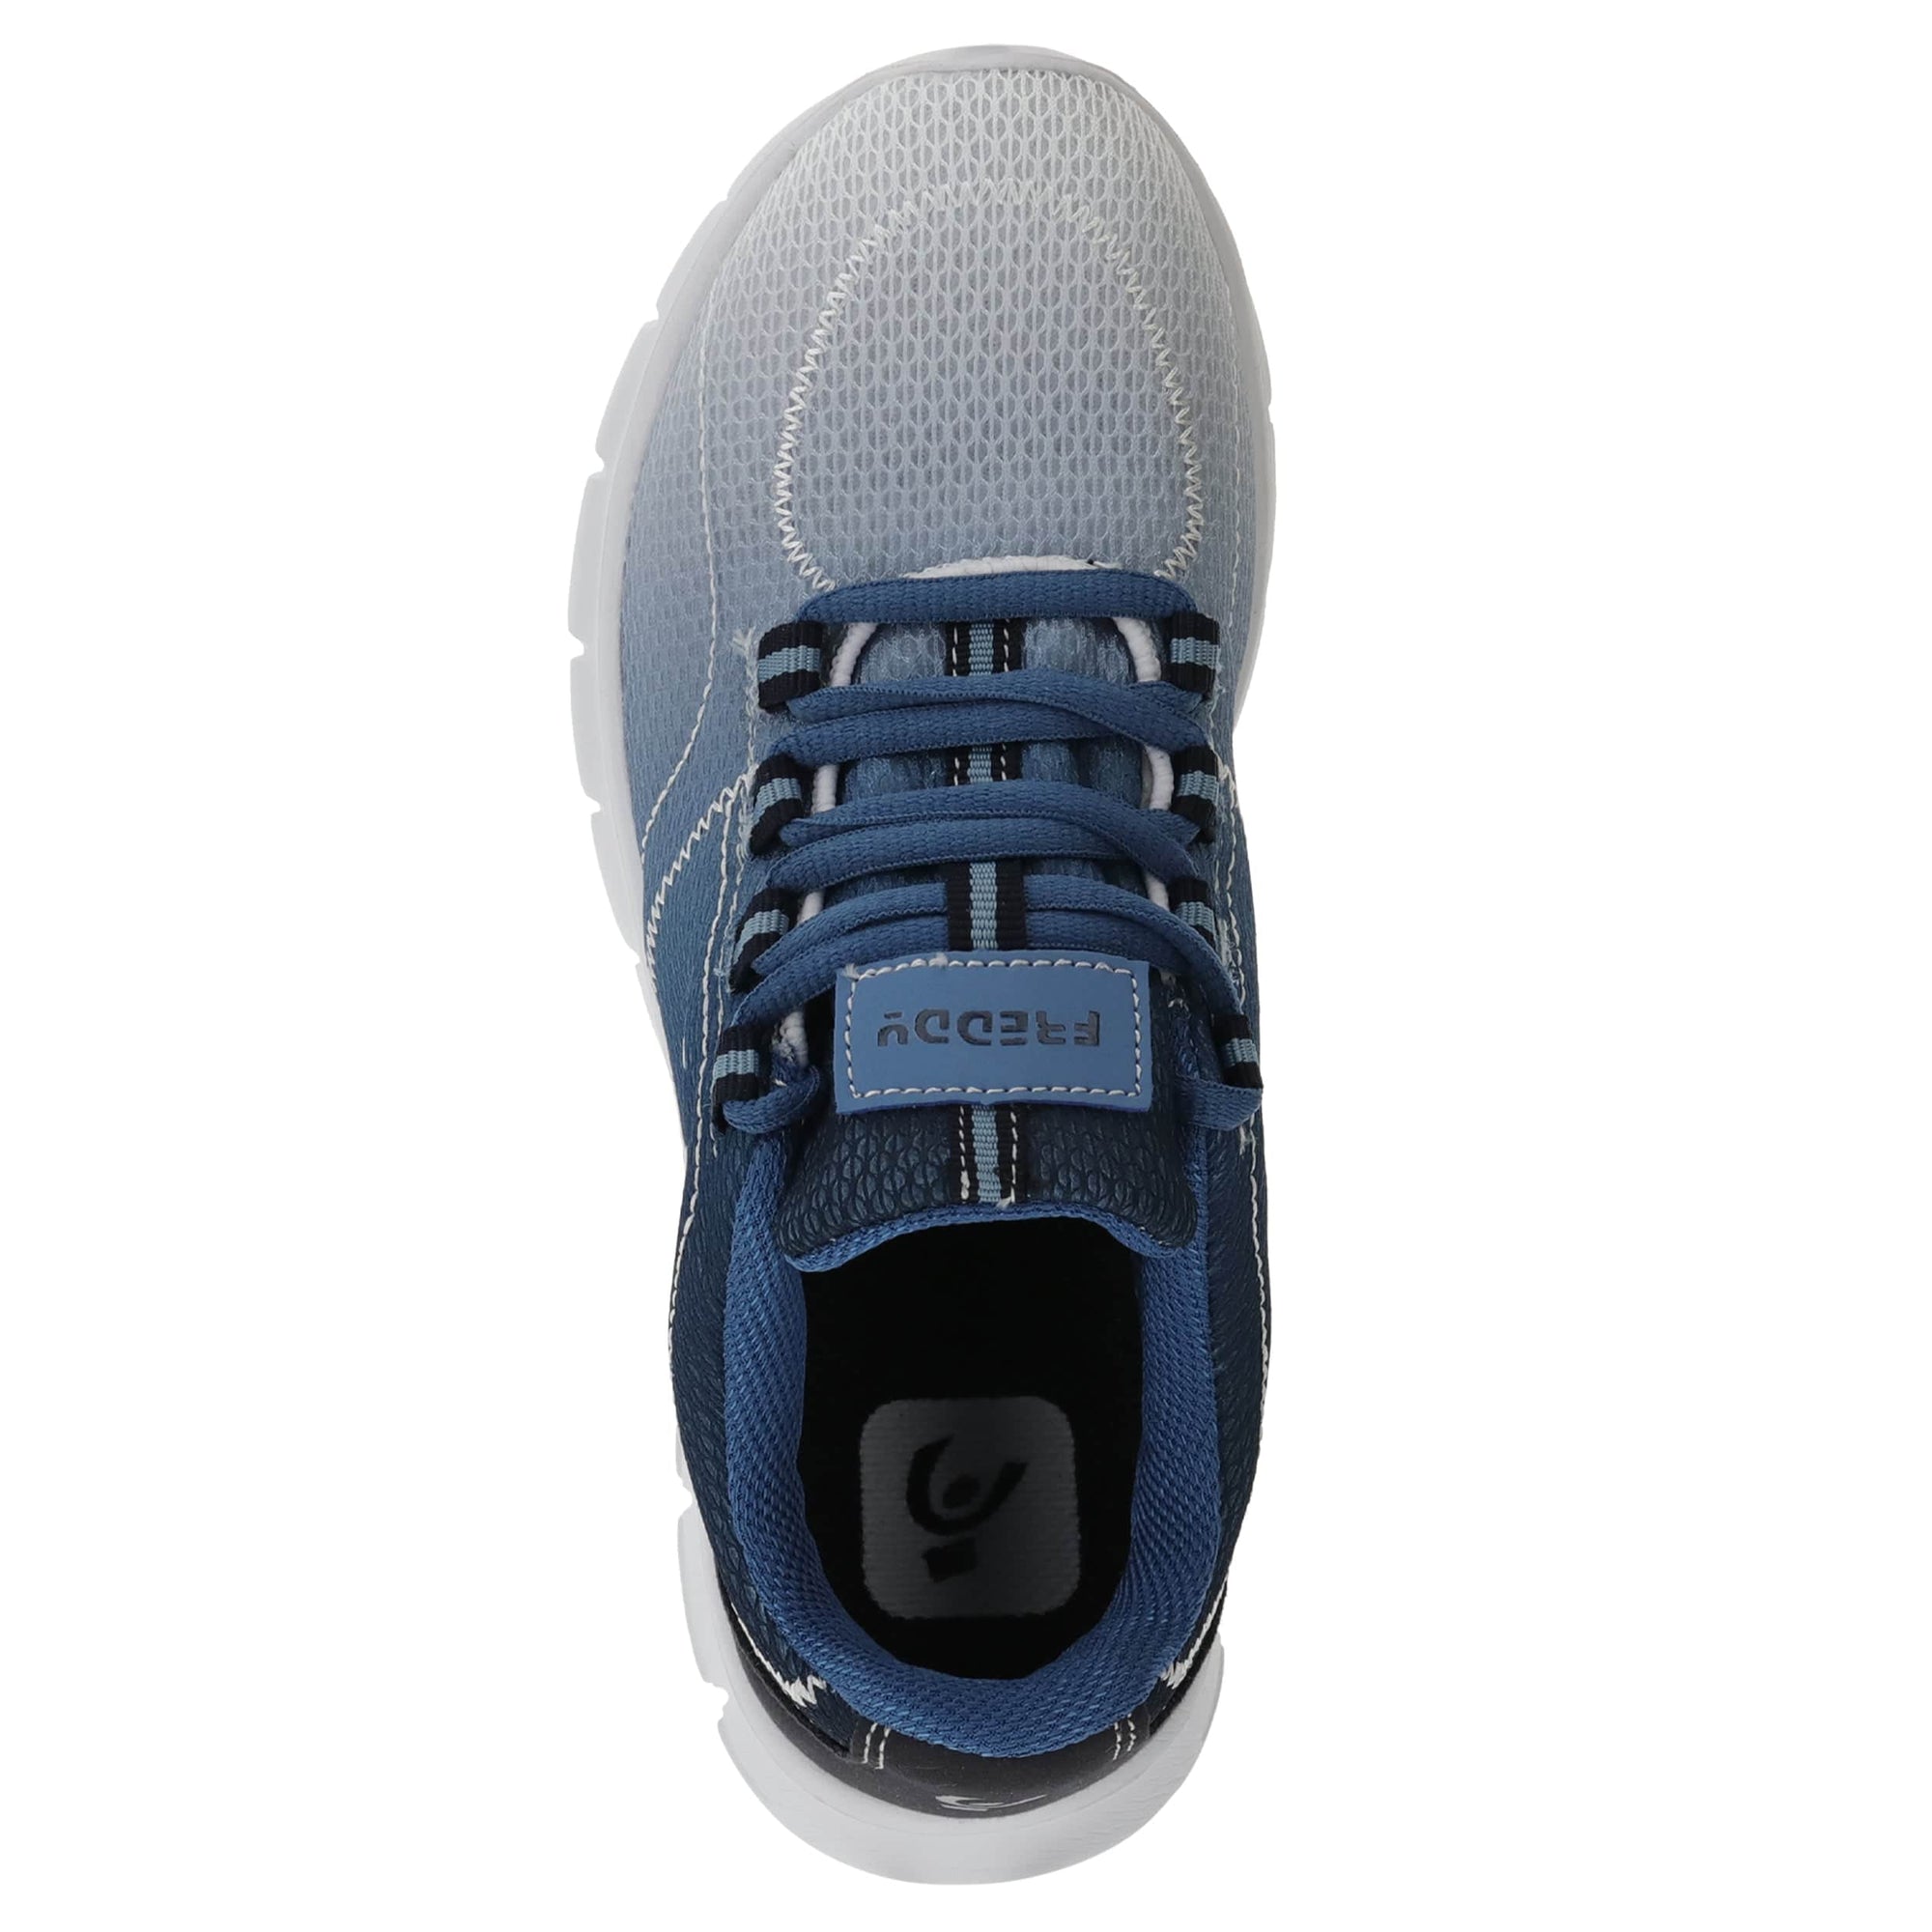 Ultralight Sneakers - Blue 2